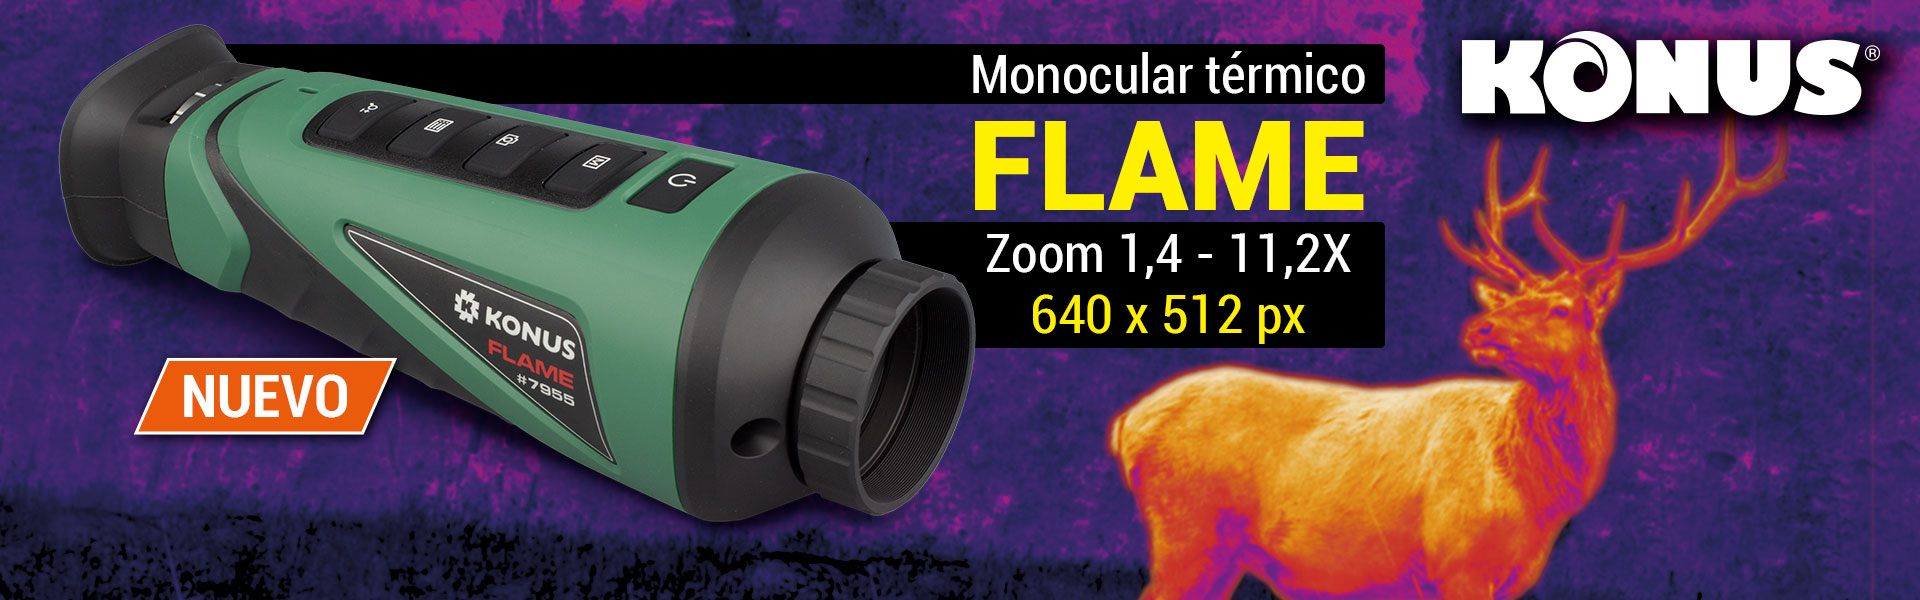 FLAME-k7955_-monocular-t-rmico-Konus